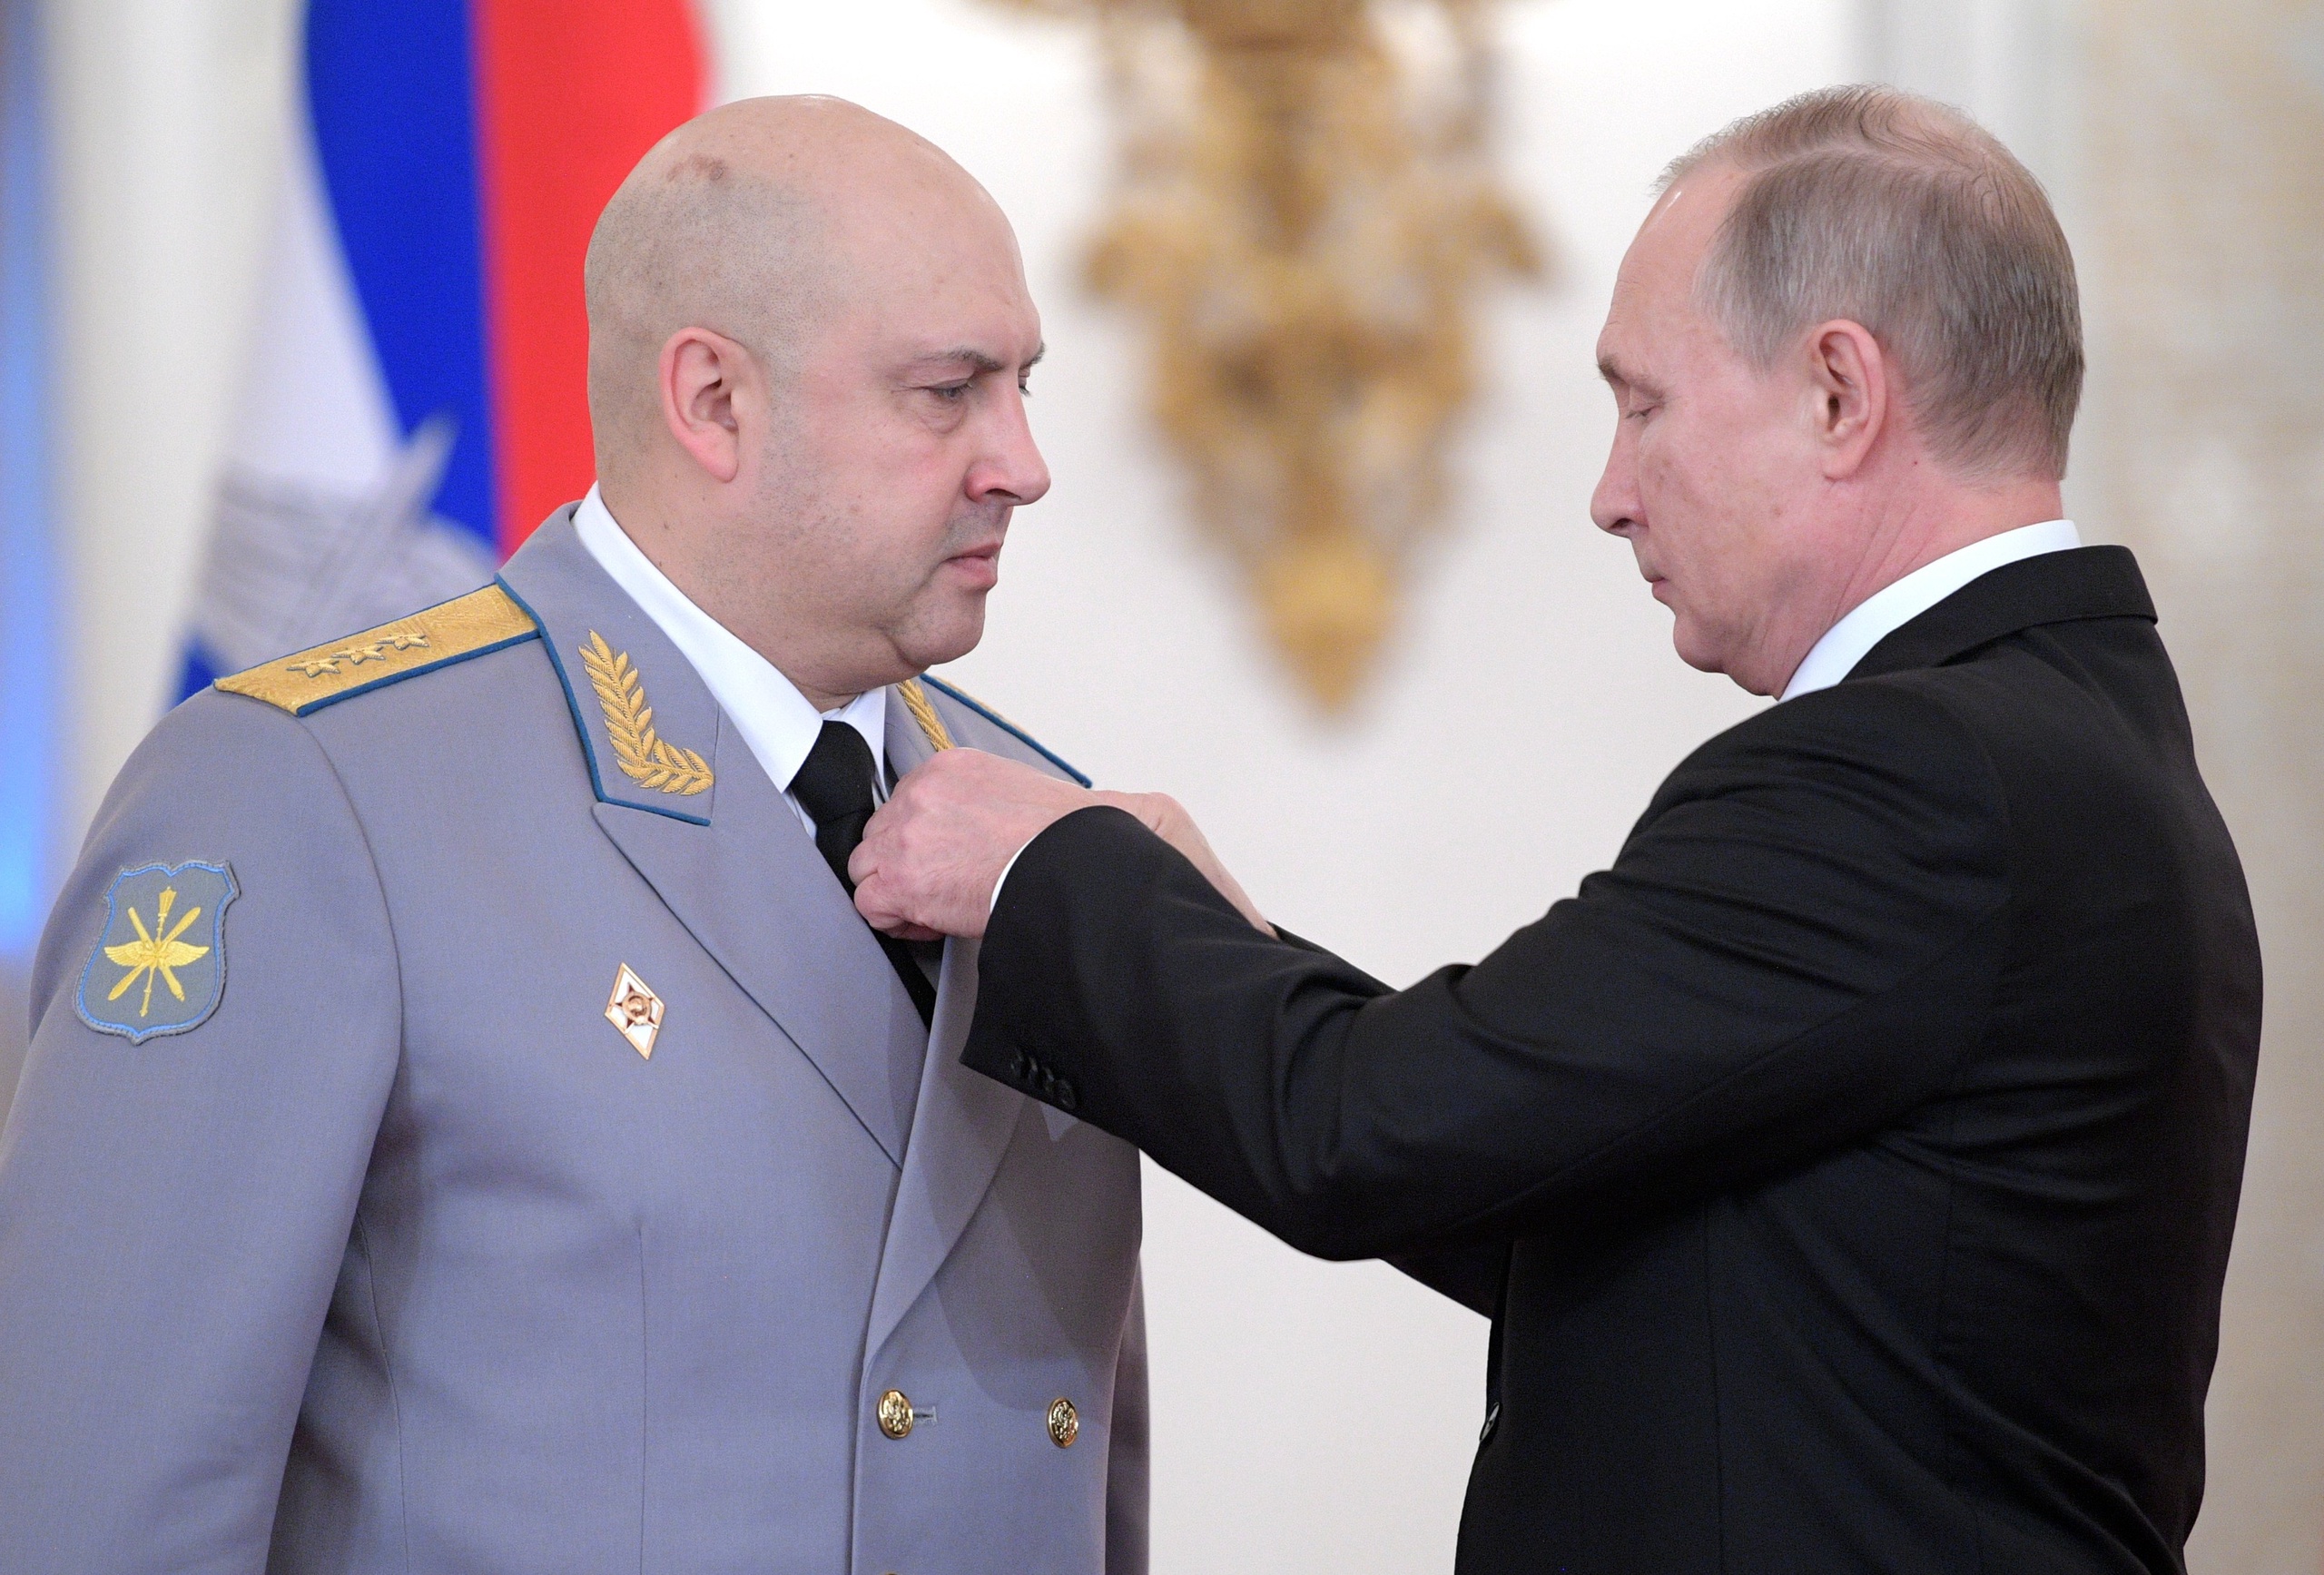 2017: Legercommandant Sergej Soerovikin krijgt een medaille van zijn baas voor zijn verdiensten in Syrië. 